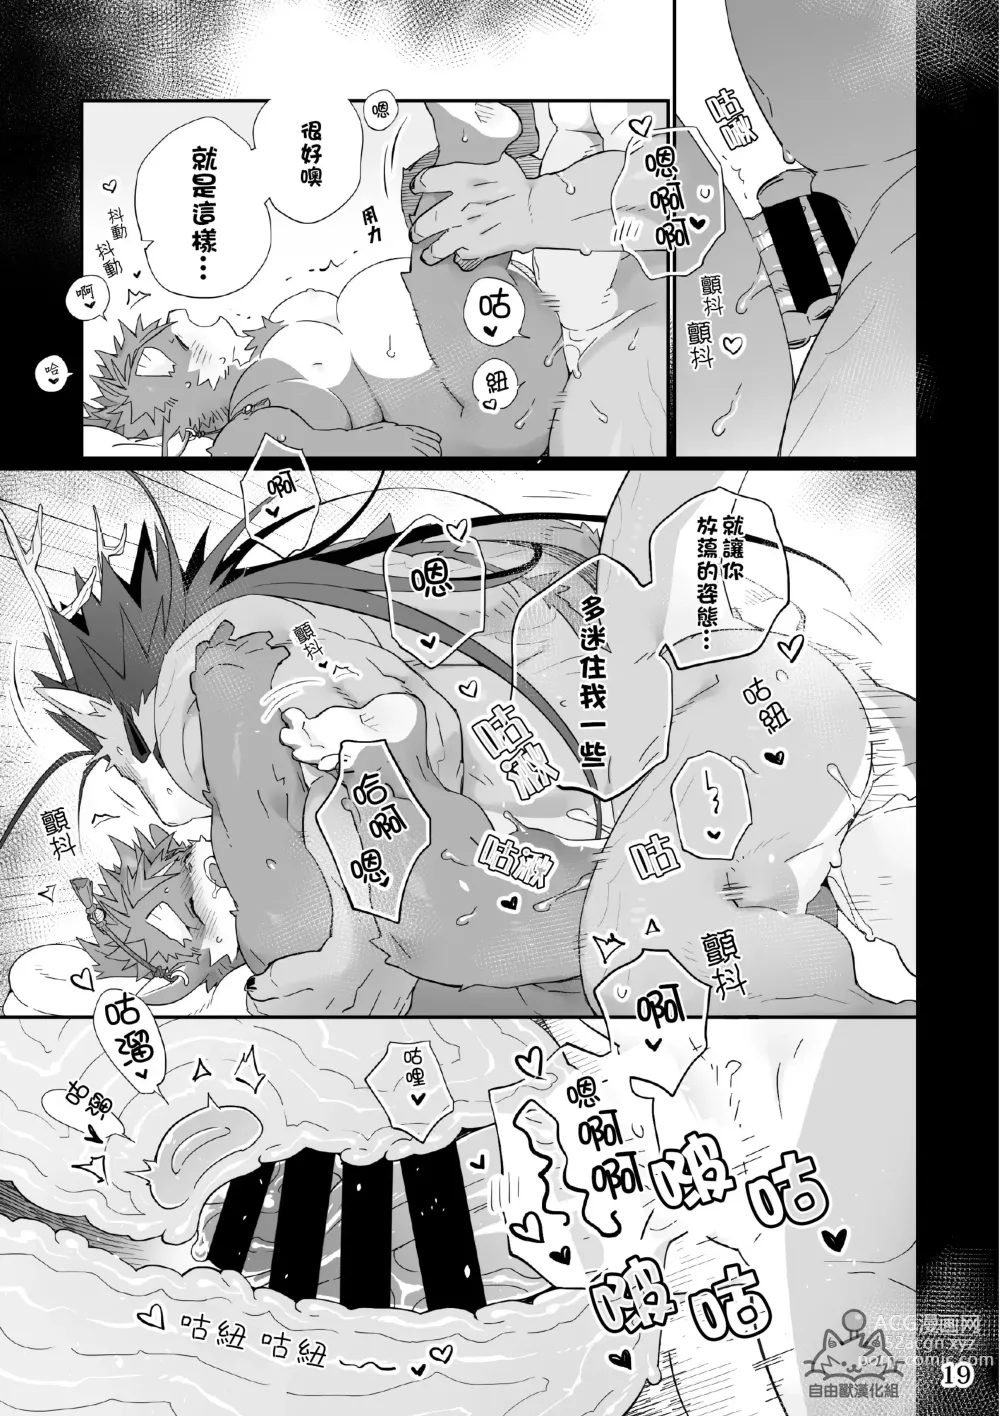 Page 18 of doujinshi Utopia